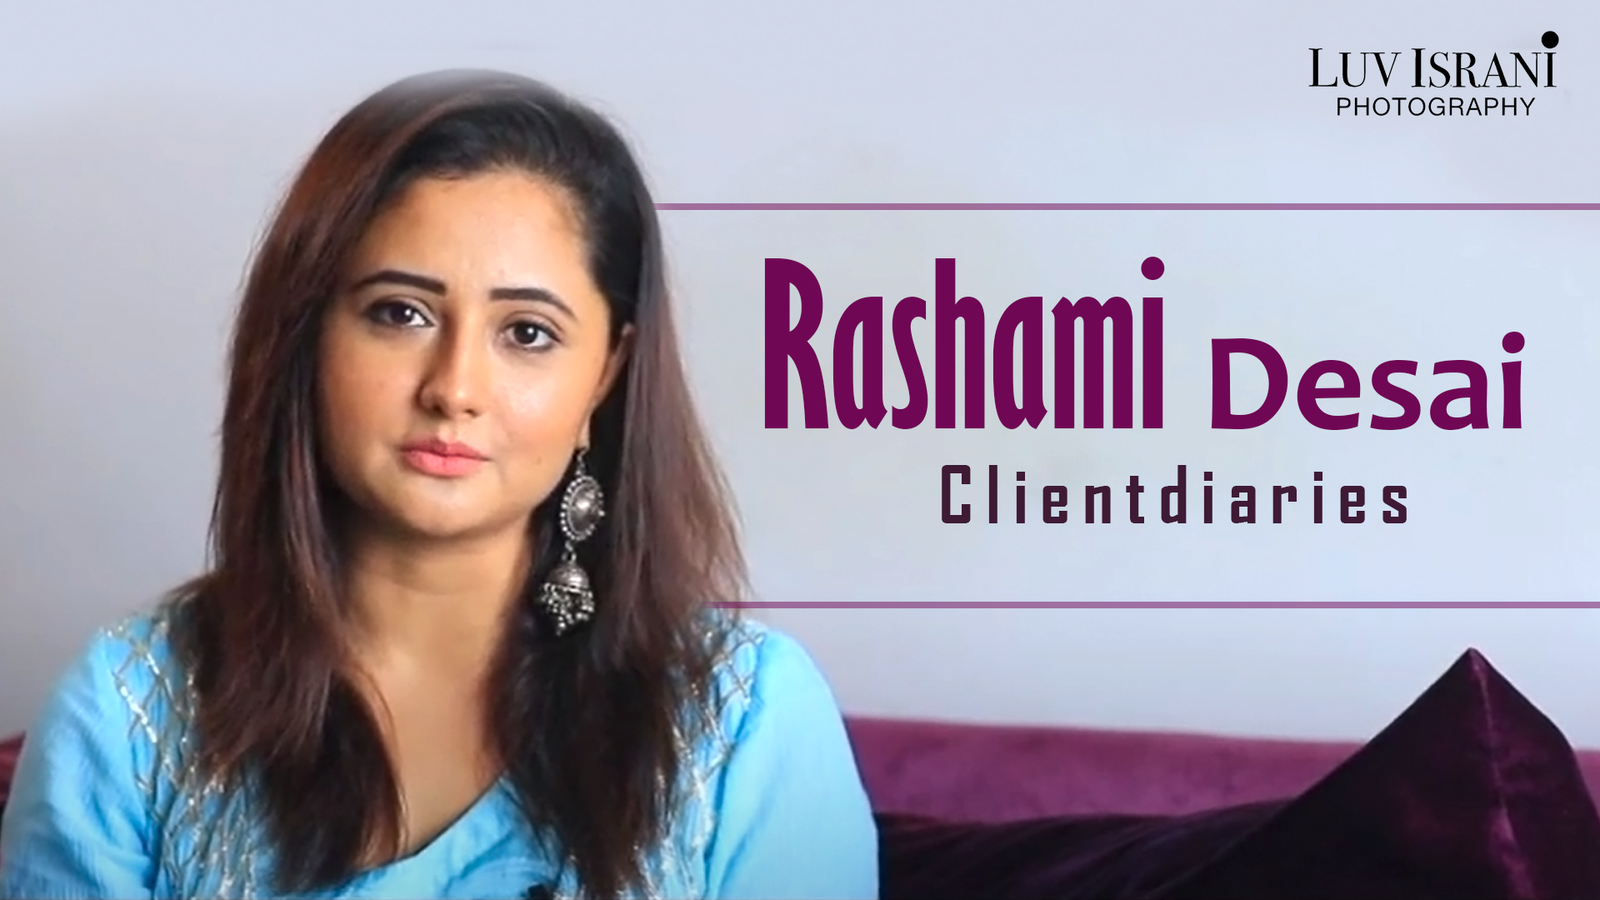 Rashami Desai client diaries